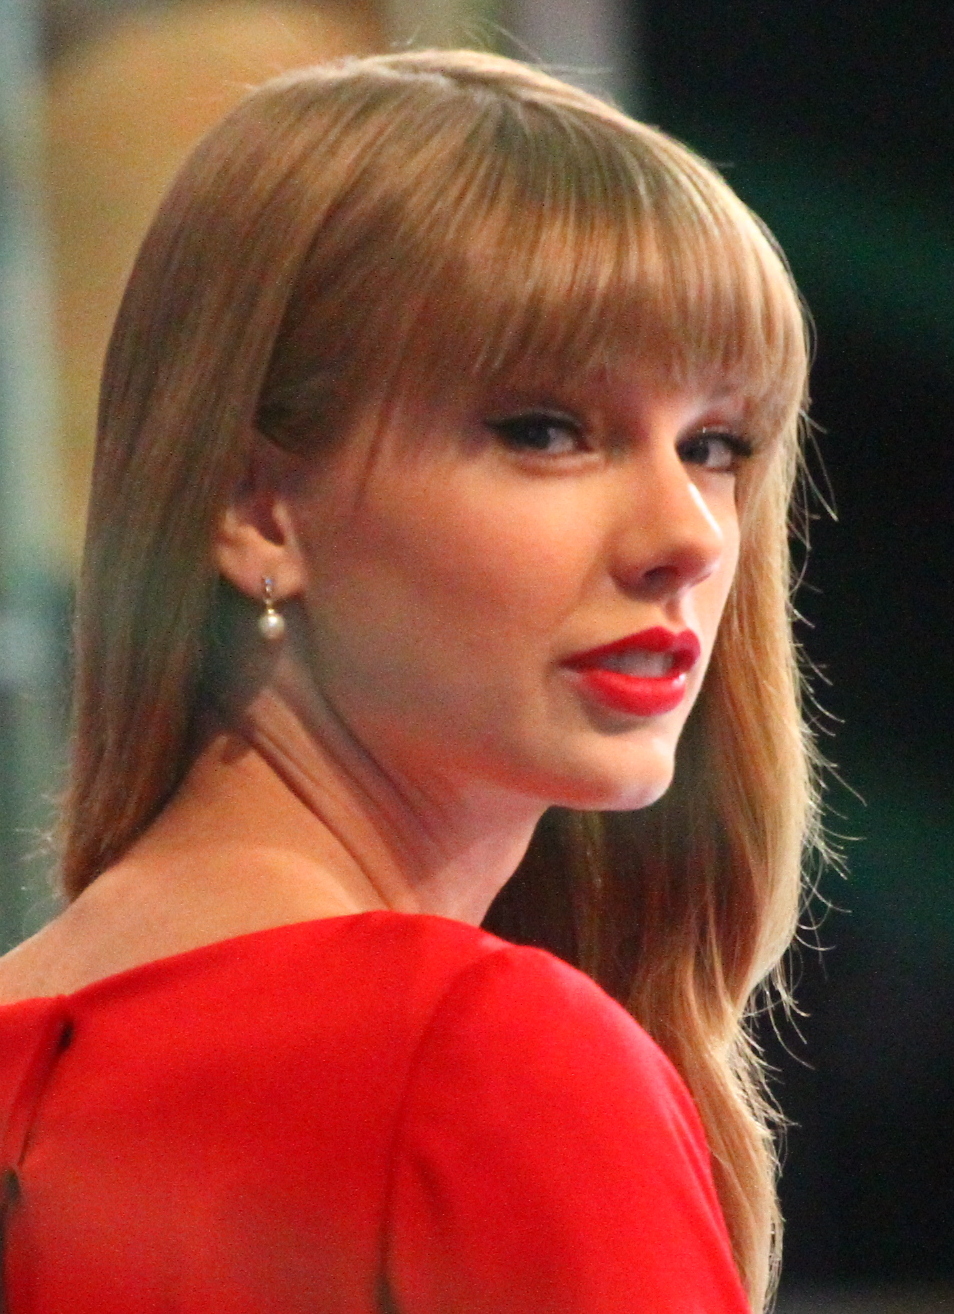 Taylor Swift: The Eras Tour - Wikipedia